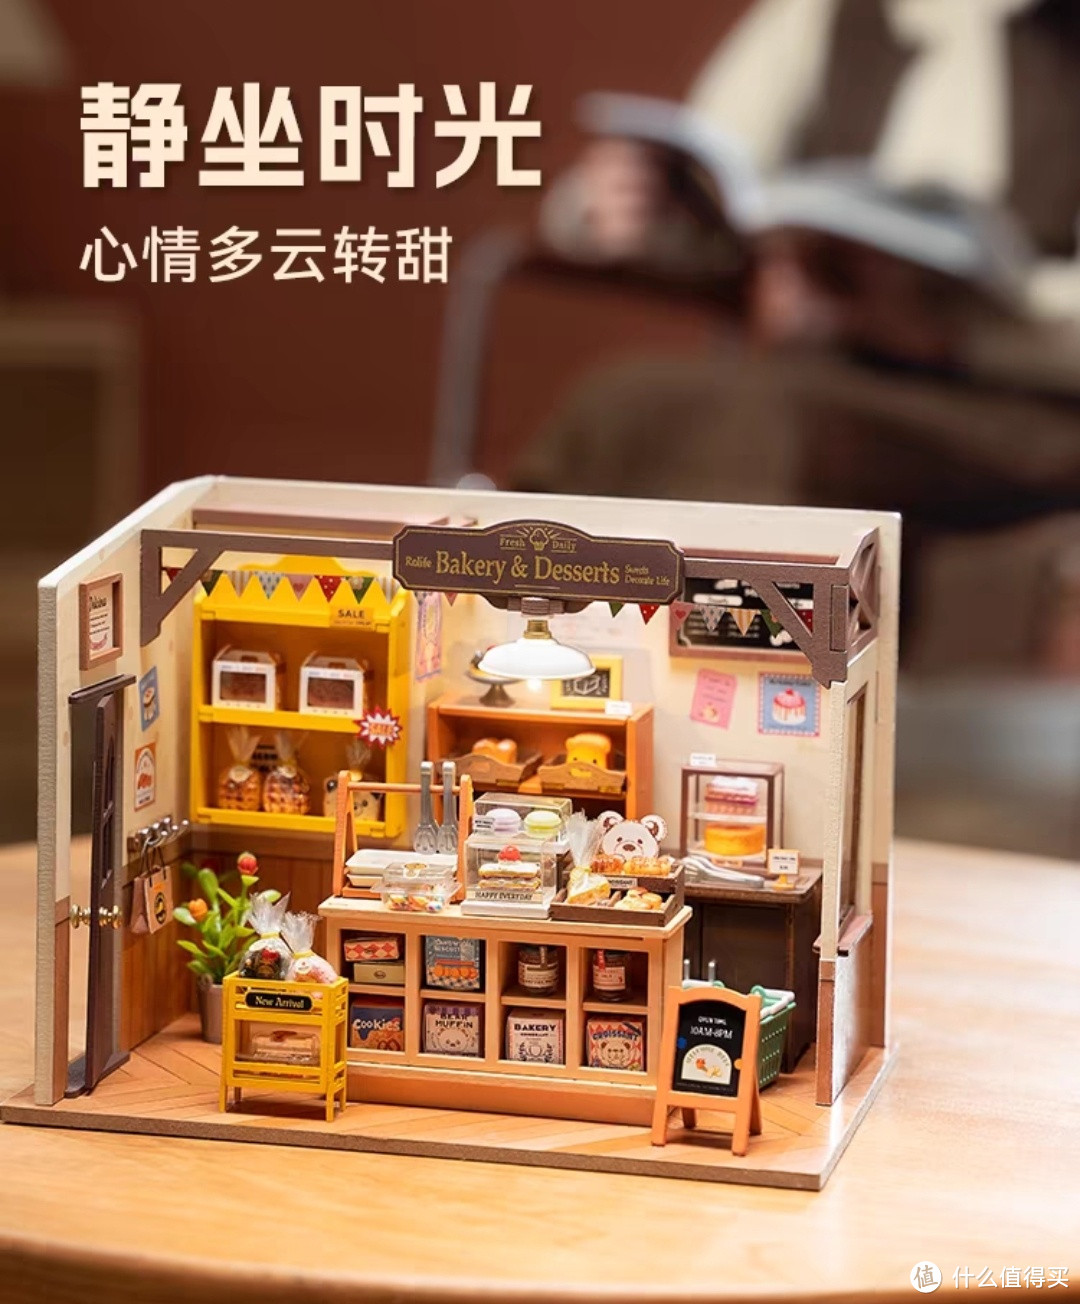 面包店 DIY 手工小屋：打造属于你的迷你梦想家园